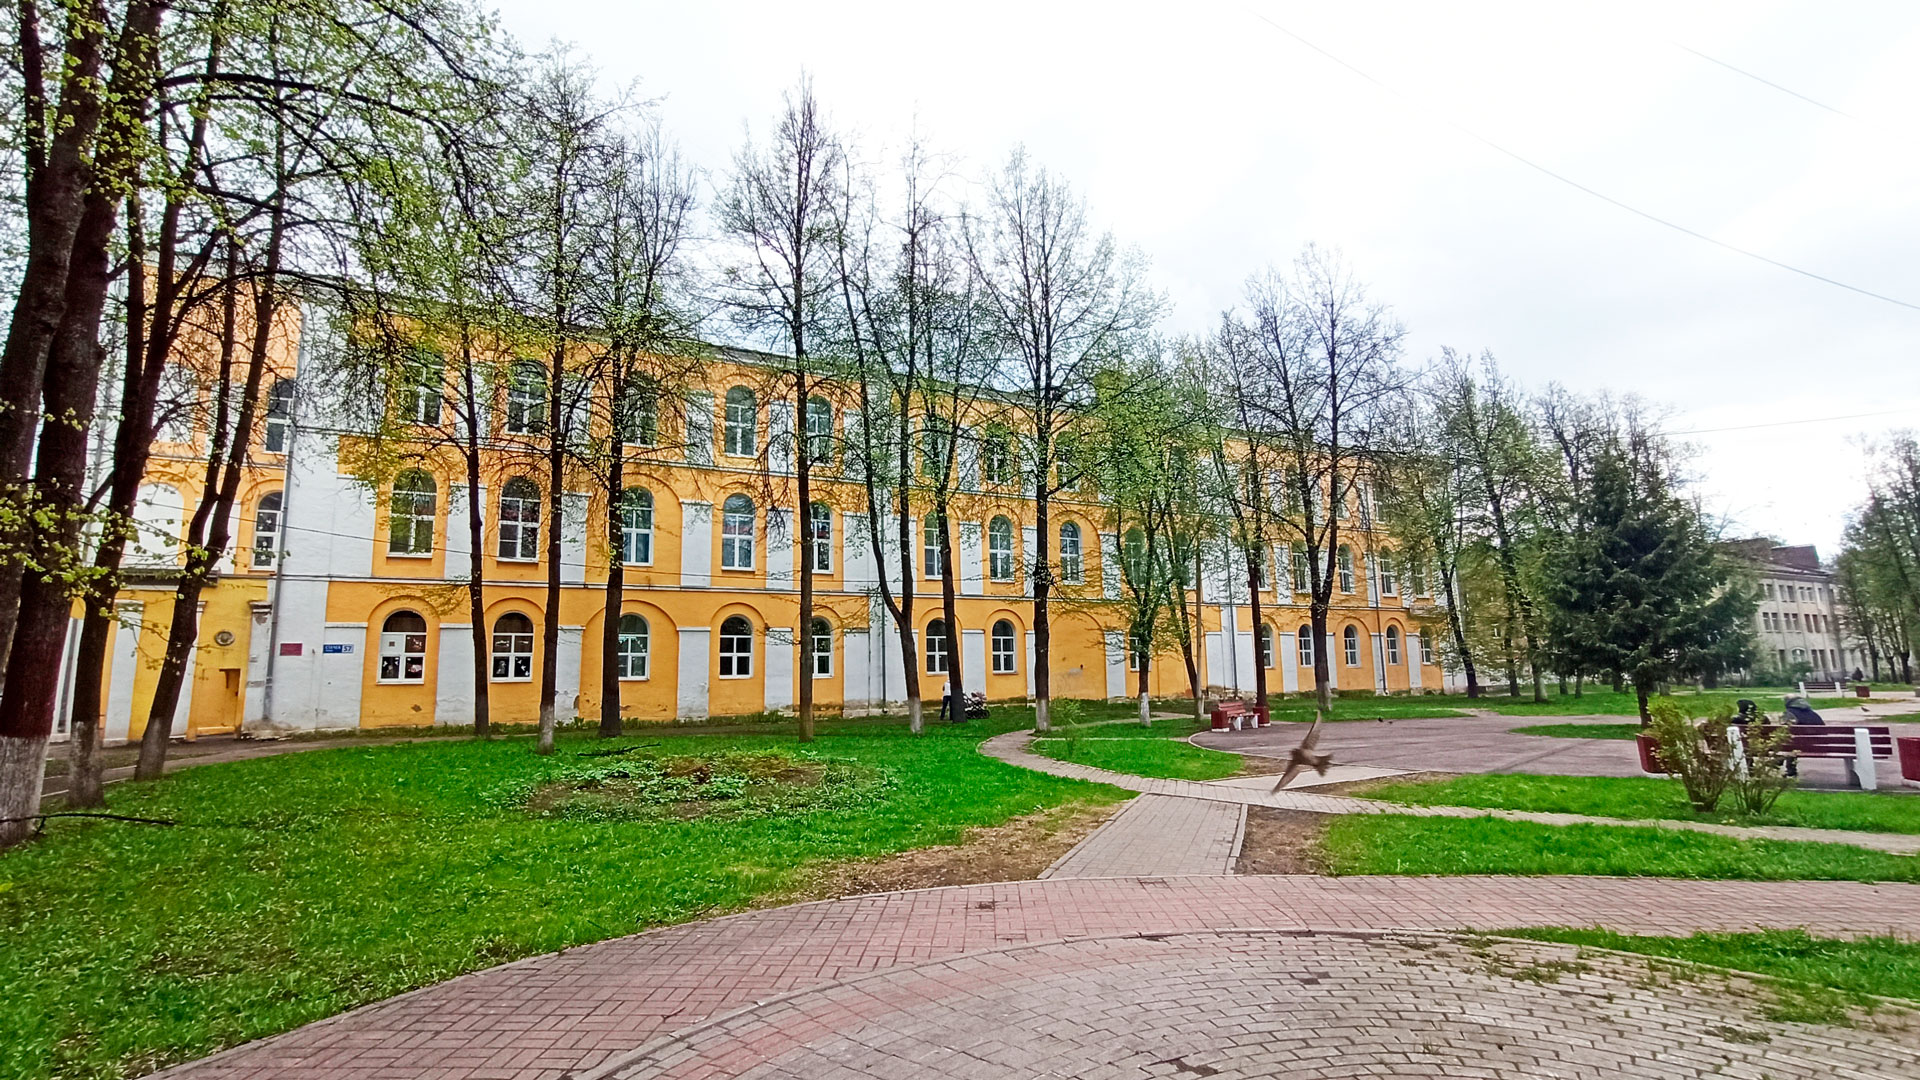 Школа 96 Ярославль: общий вид школьного учреждения.